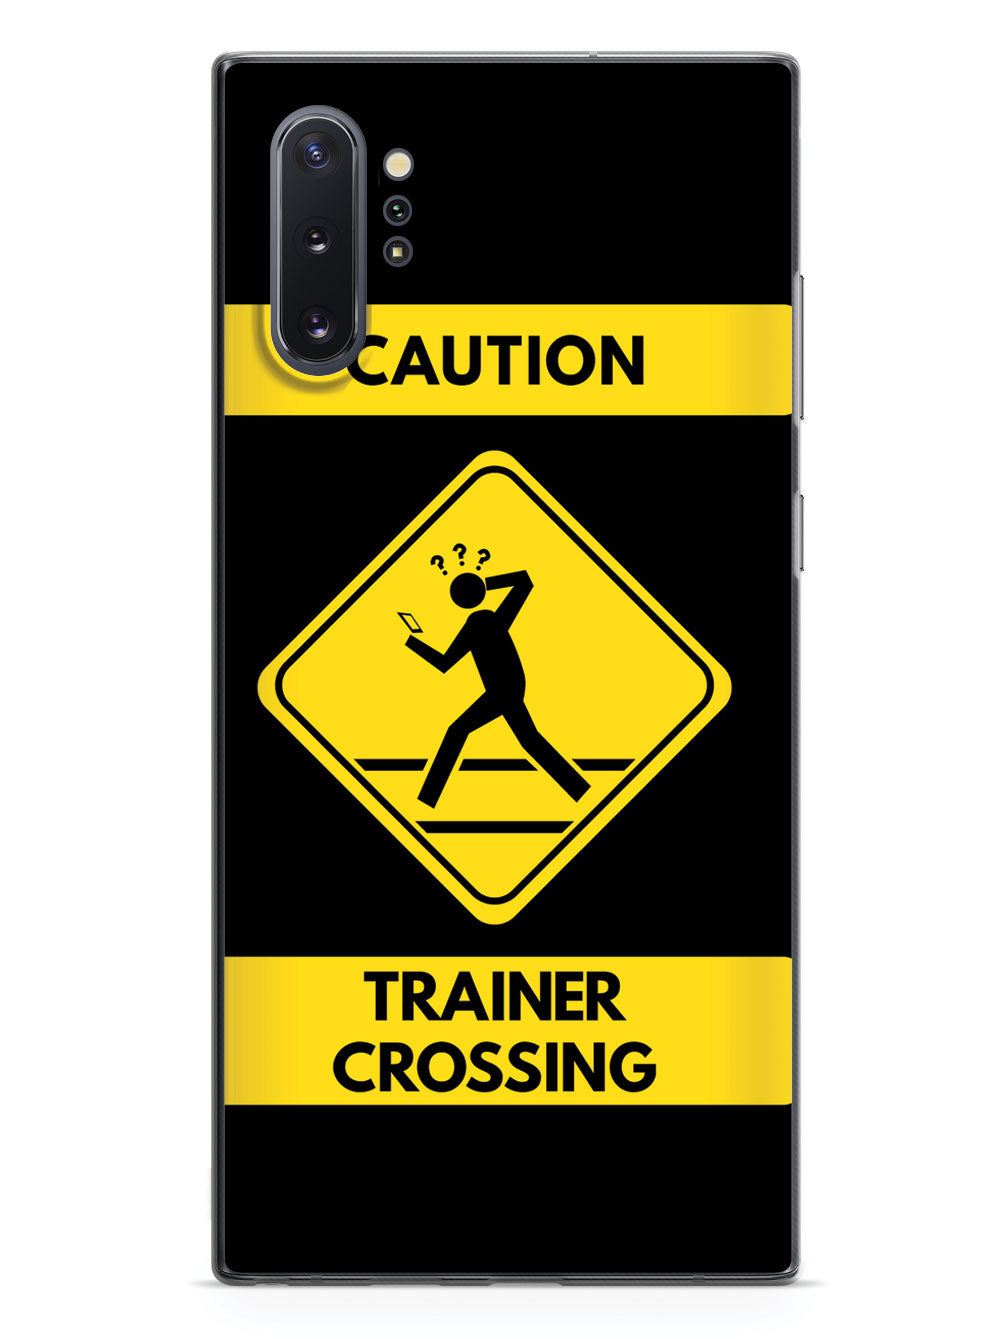 Caution Trainer Crossing - Black Case